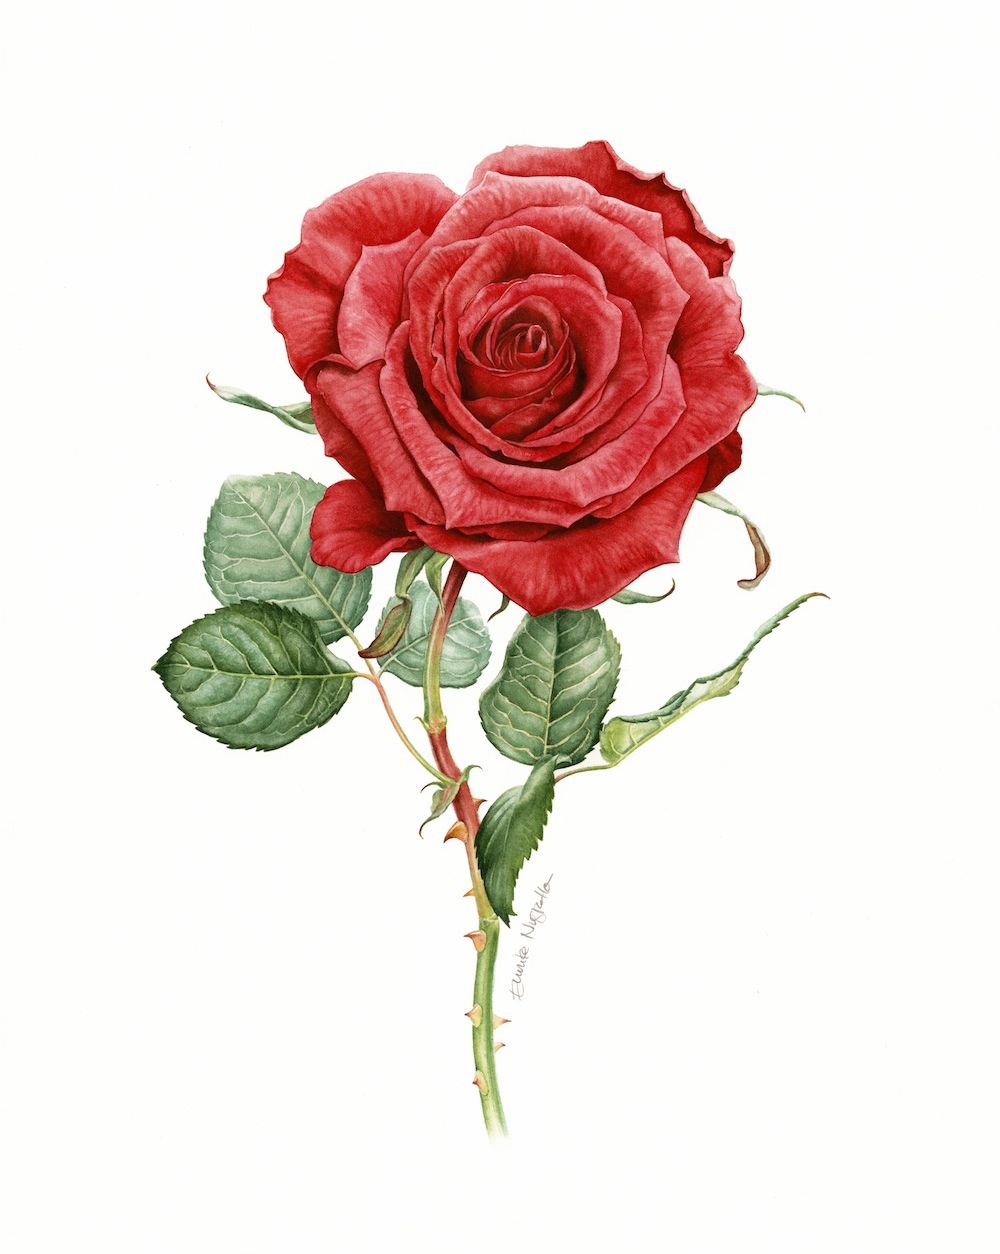 Süddeutsche Zeitung suddeutsche zeitung Magazin botanical watercolor flower floral natural realistic poppy rose